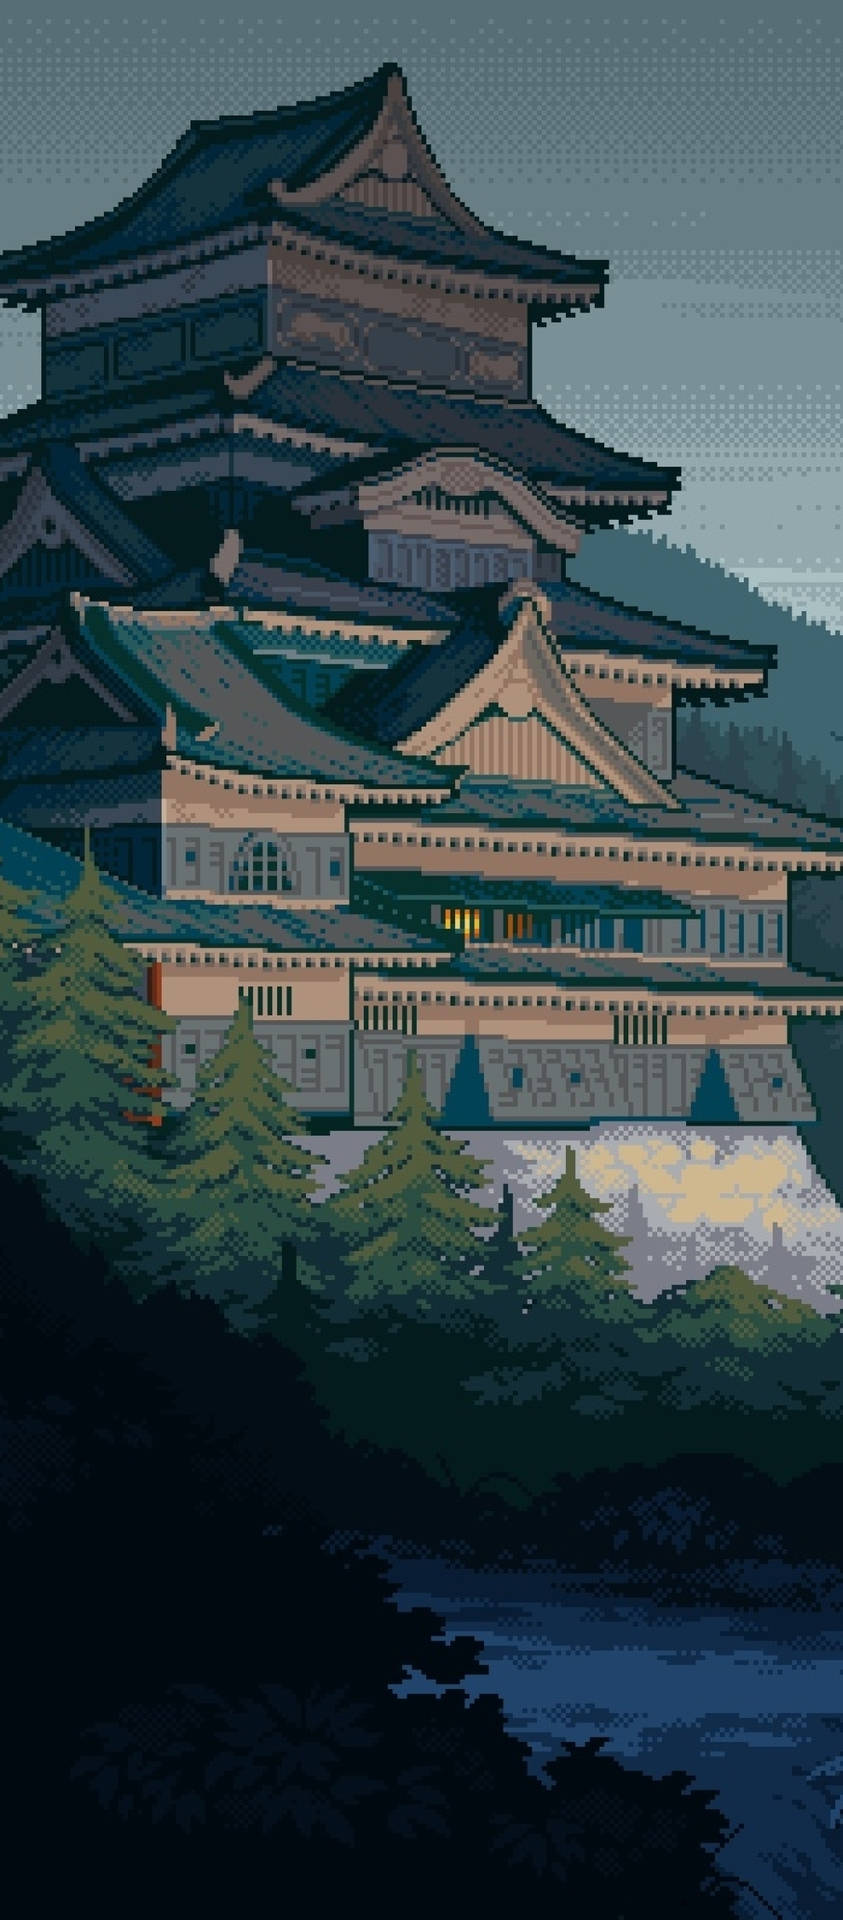 8 Bit Japan Palace Pagoda Wallpaper